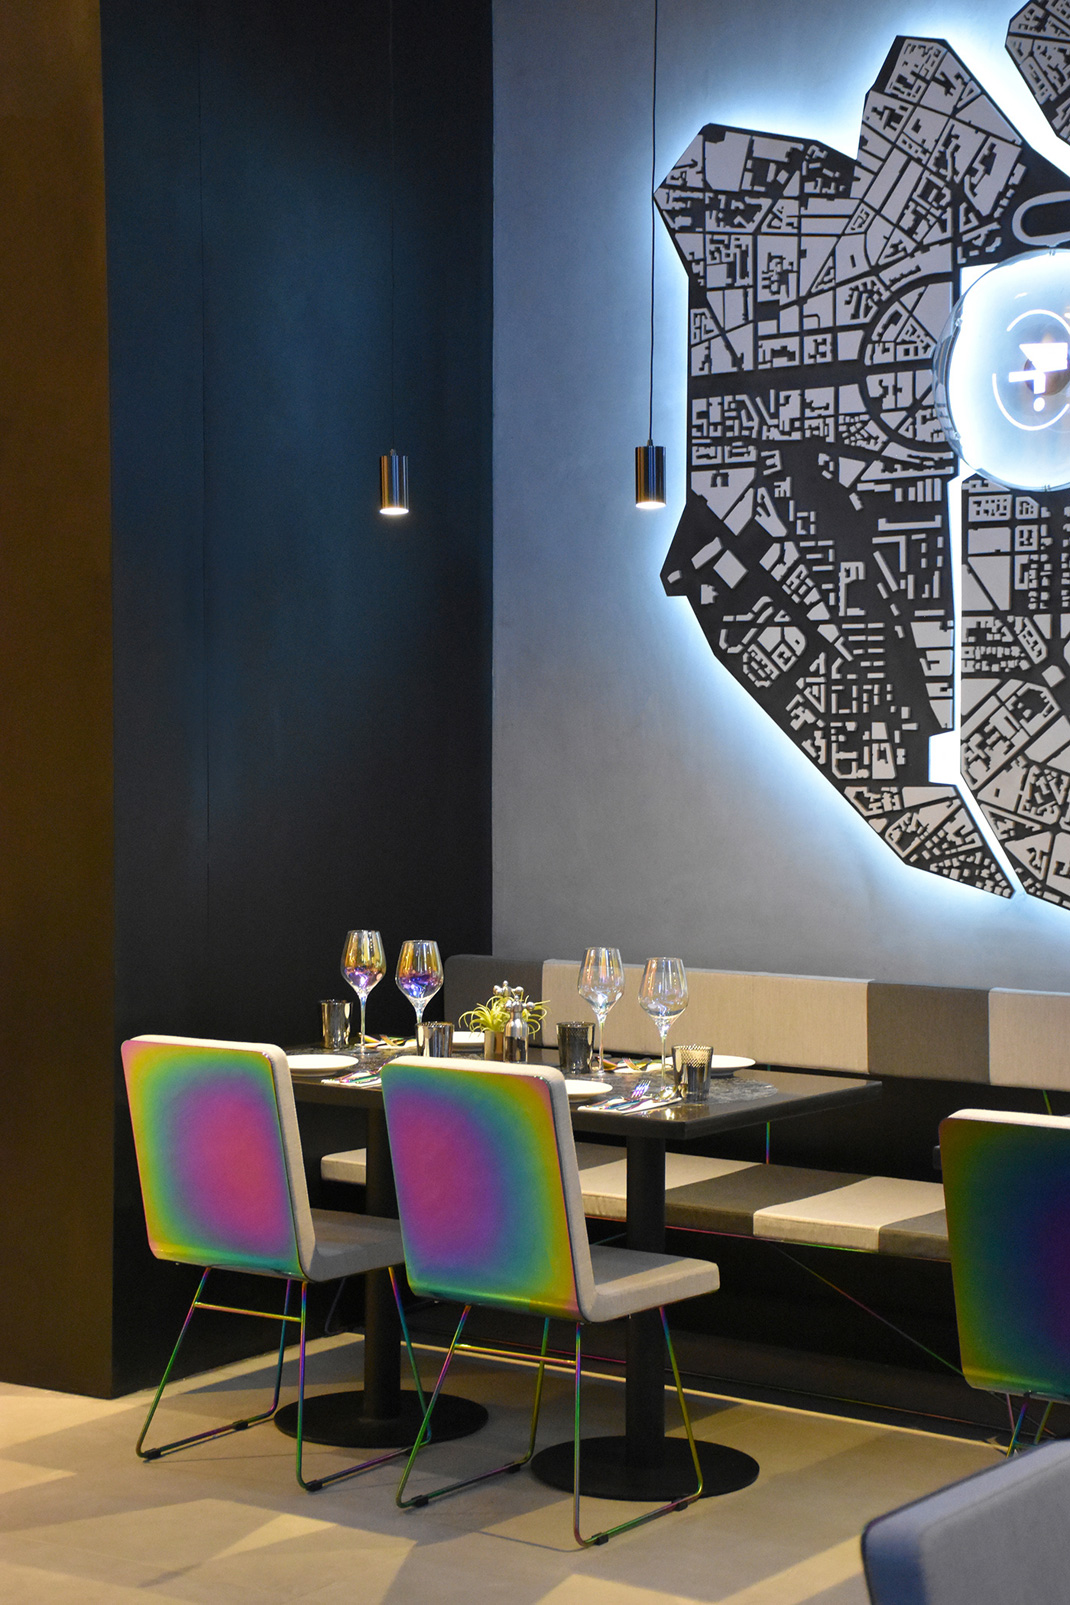 TIAGO SELECT餐厅北京 波纹天花板 瓷砖 霓虹灯 艺术装置 logo设计 VI设计 空间设计 视觉餐饮